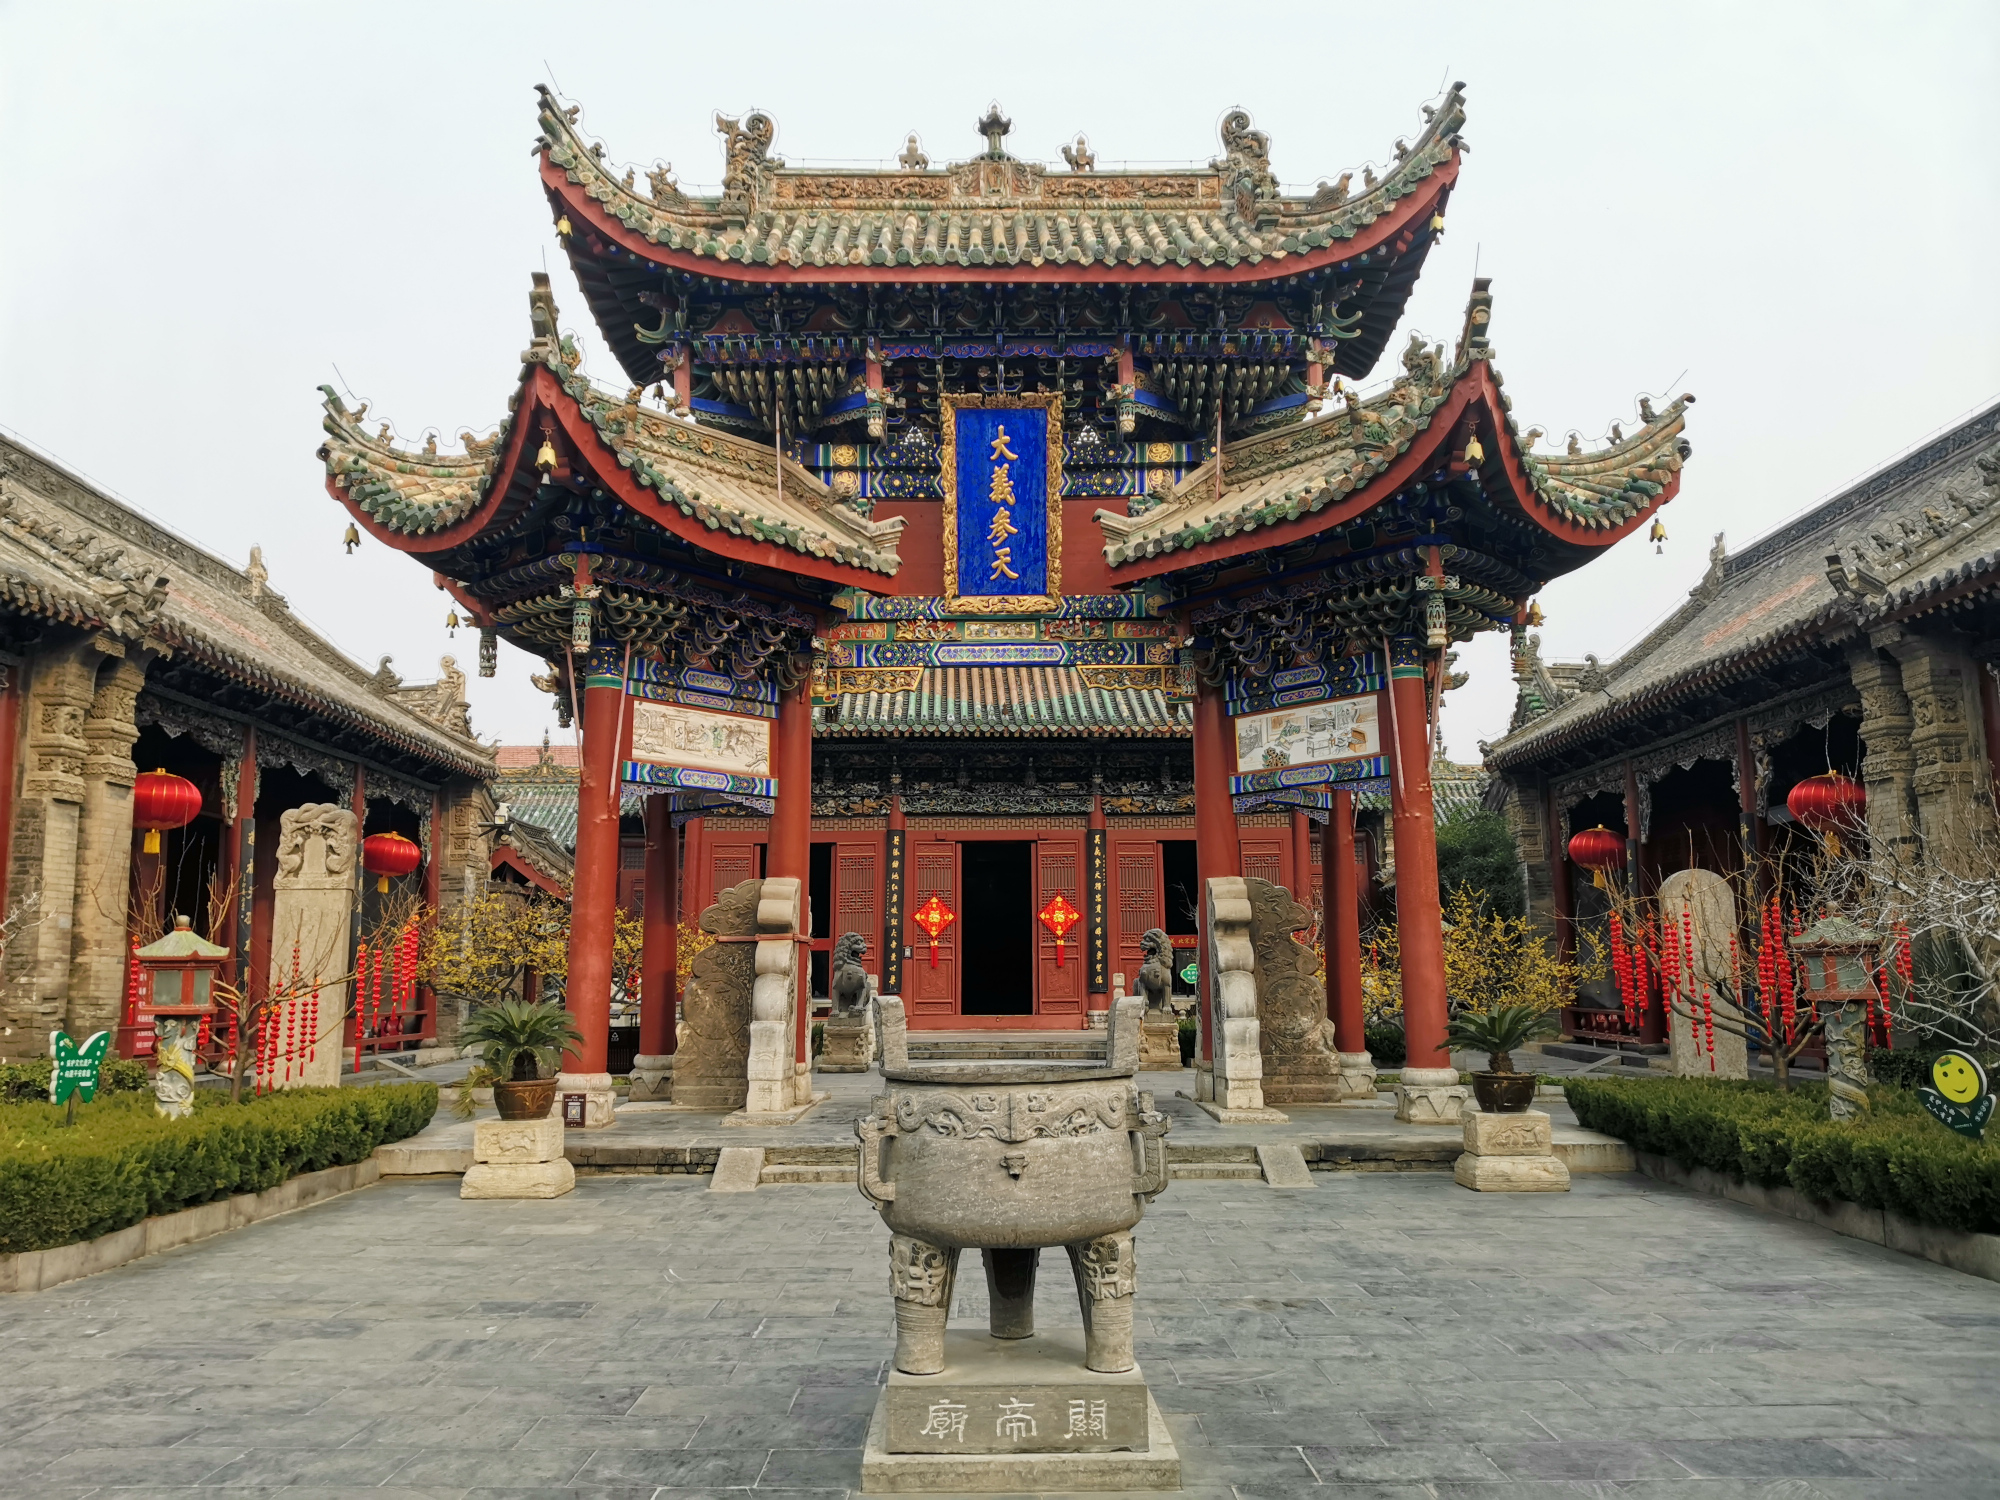 原创开封山陕甘会馆200余年的华丽古建雕刻艺术的王者